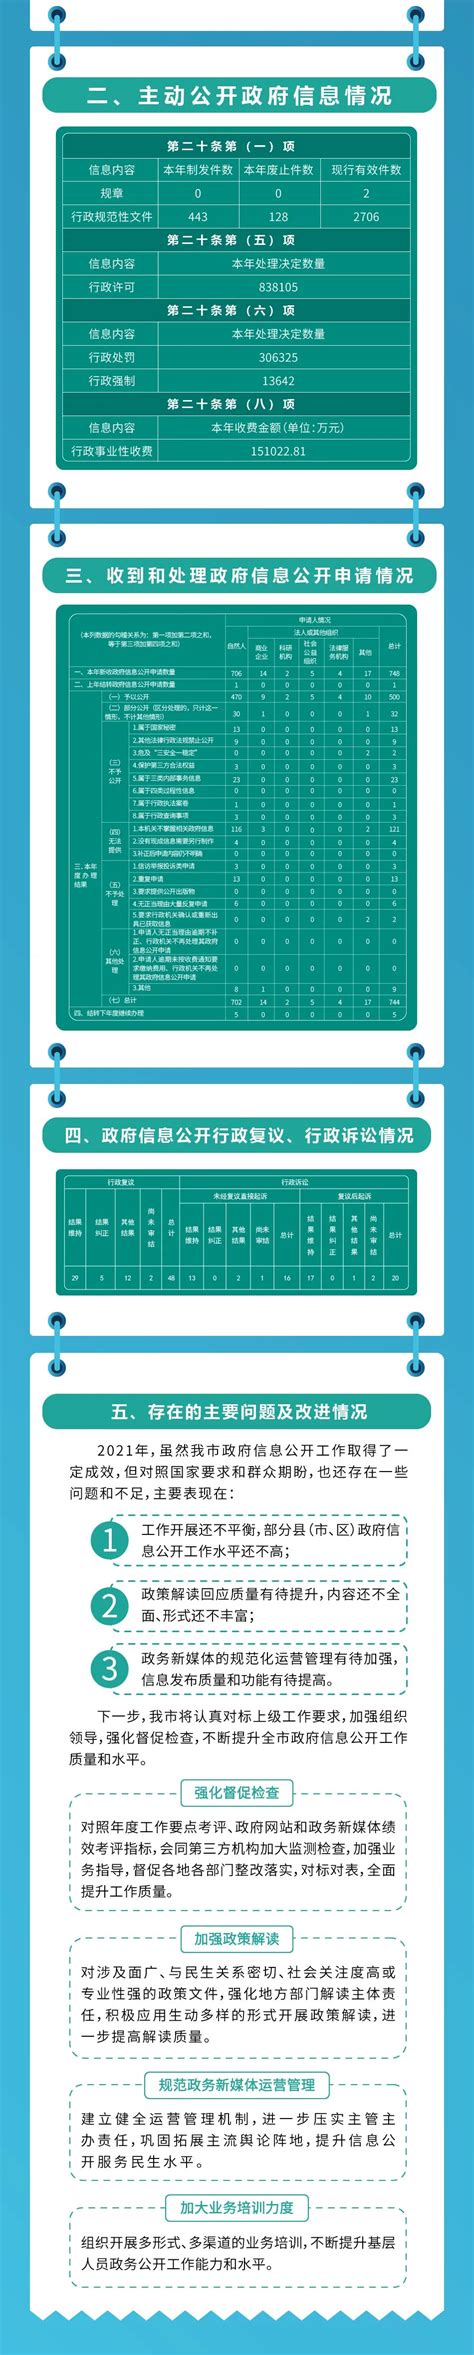 赣州市2019年政府信息公开工作年度报告（图文版）